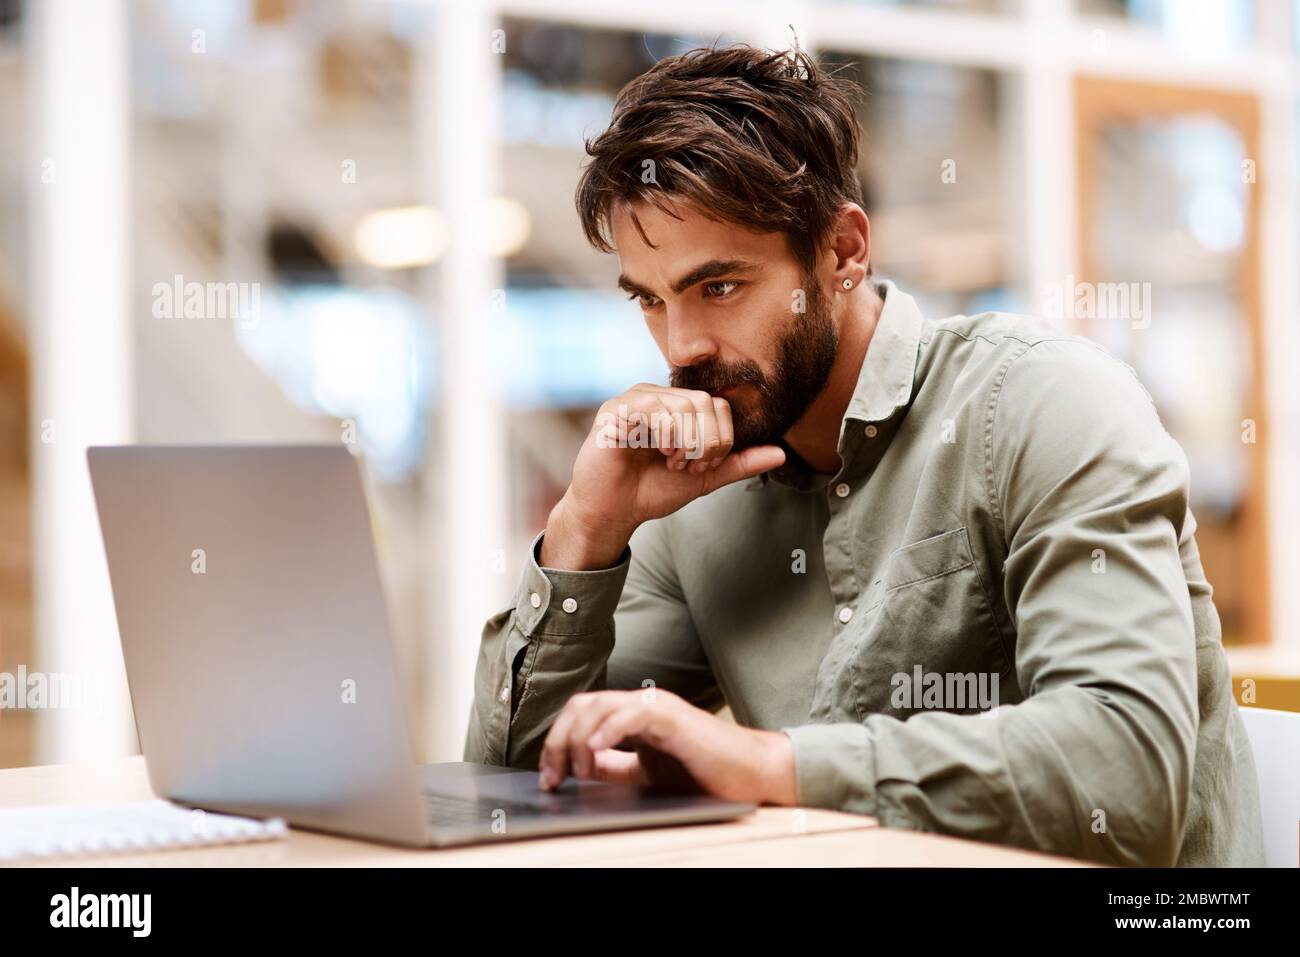 Utiliser des approches innovantes et imaginatives de l'entreprise. un jeune homme d'affaires travaillant sur un ordinateur portable dans un bureau. Banque D'Images